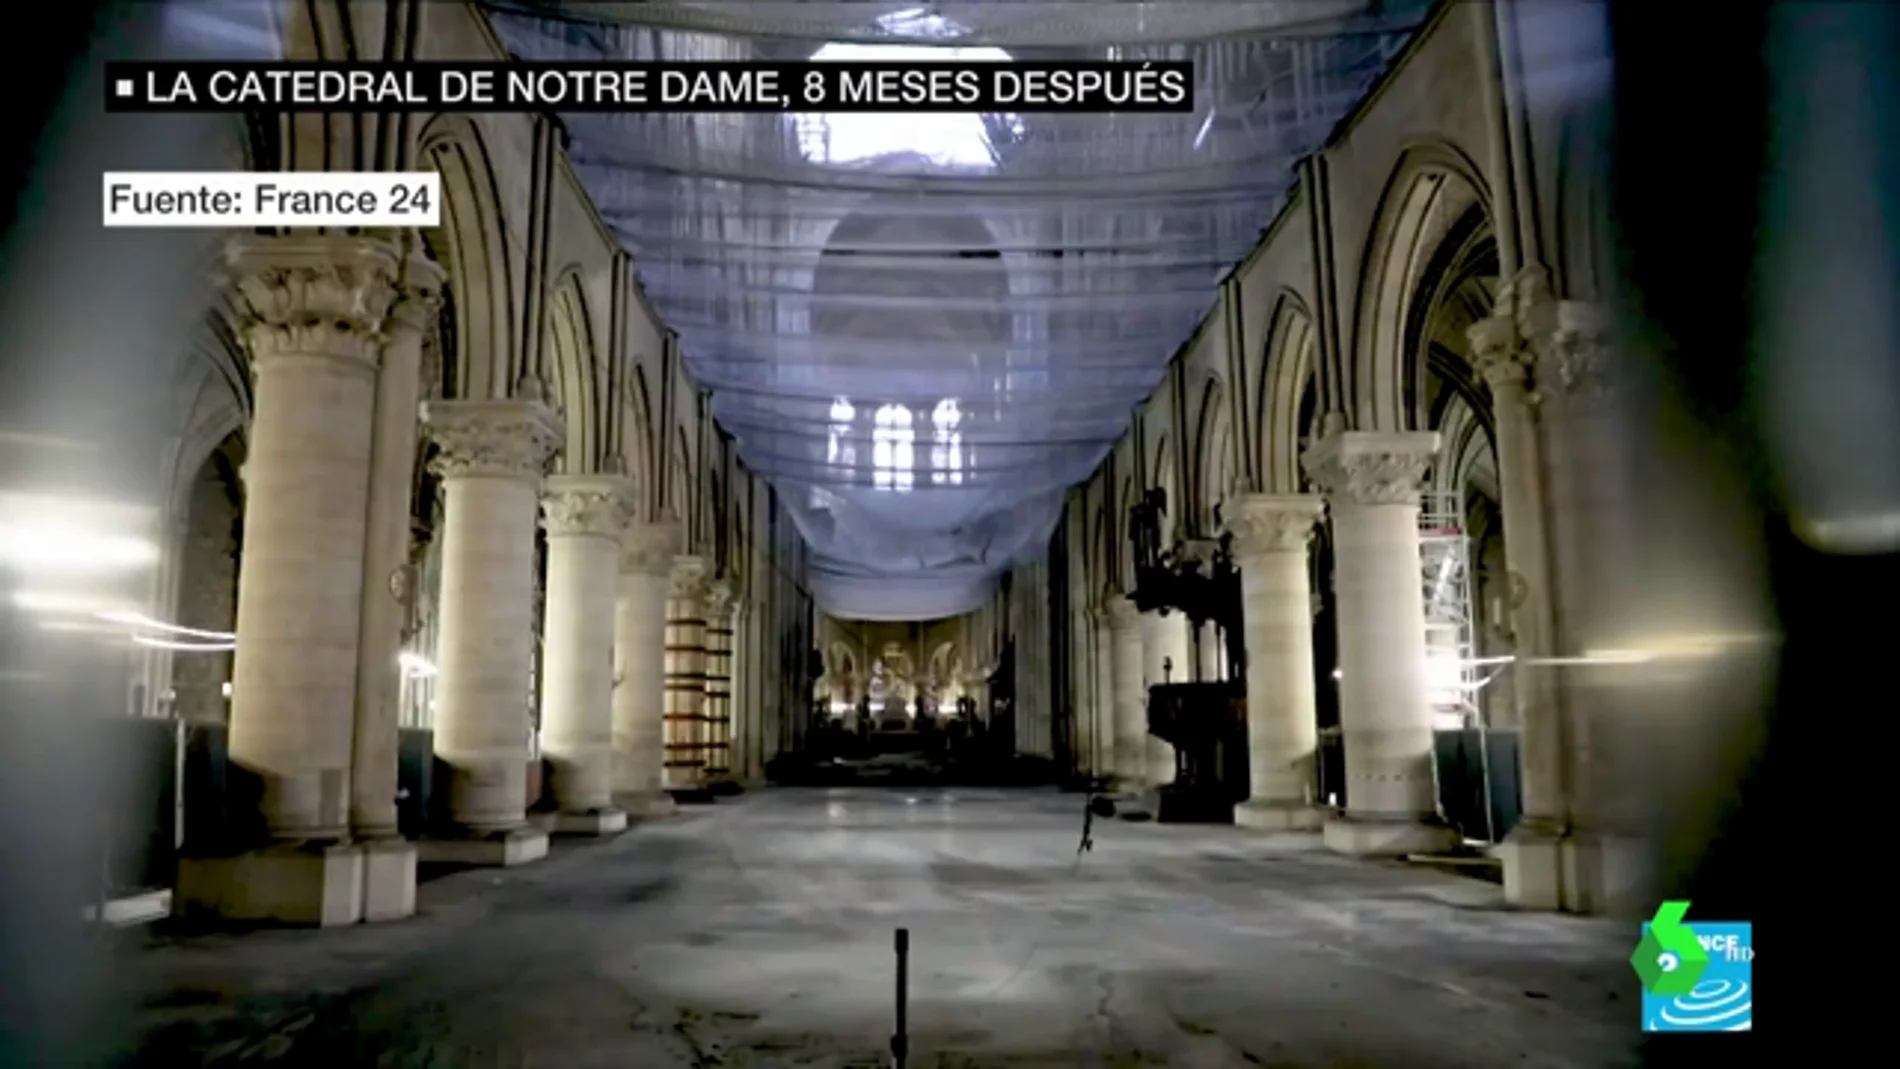 Un guiño que cambió la historia: Macron decidió salvar Notre Dame poniendo en riesgo la vida de 20 hombres